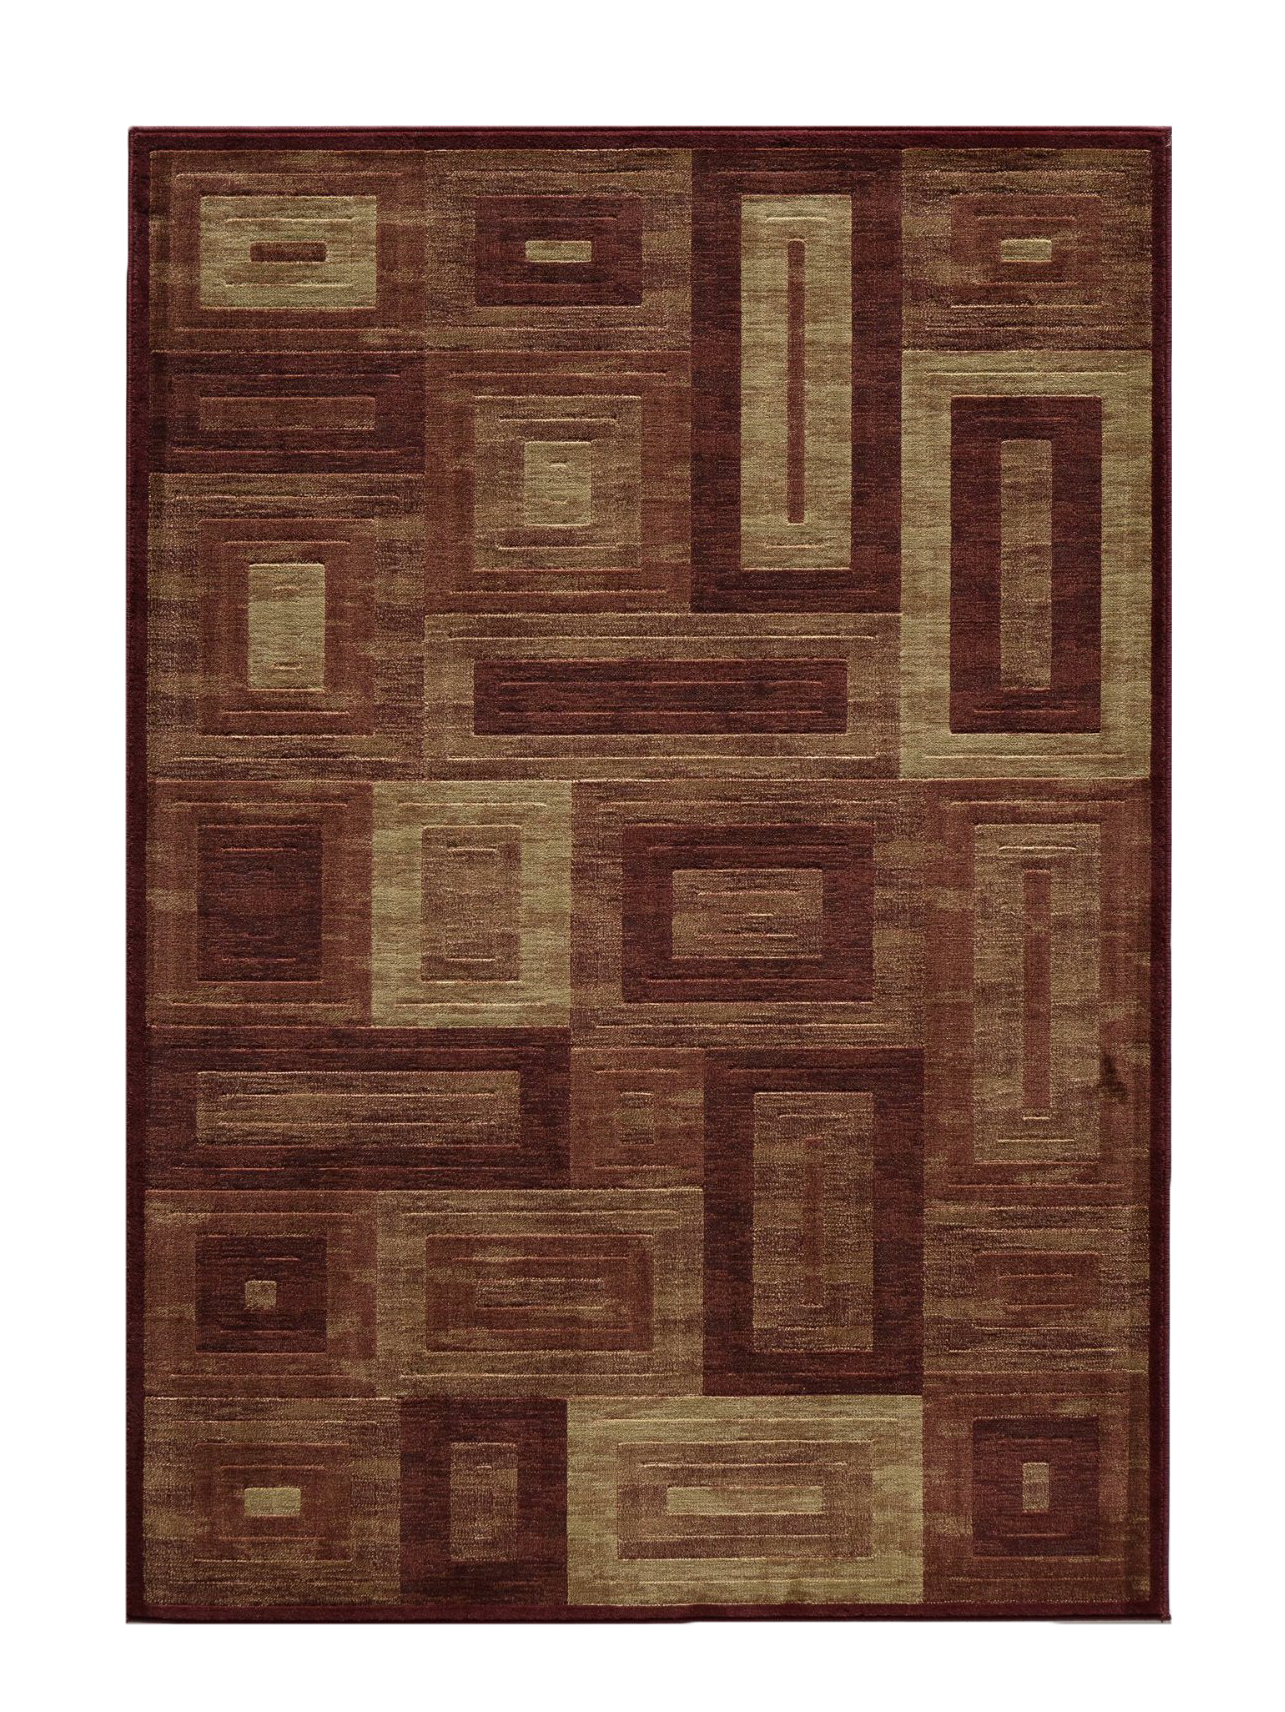 Carpet Free PNG Image